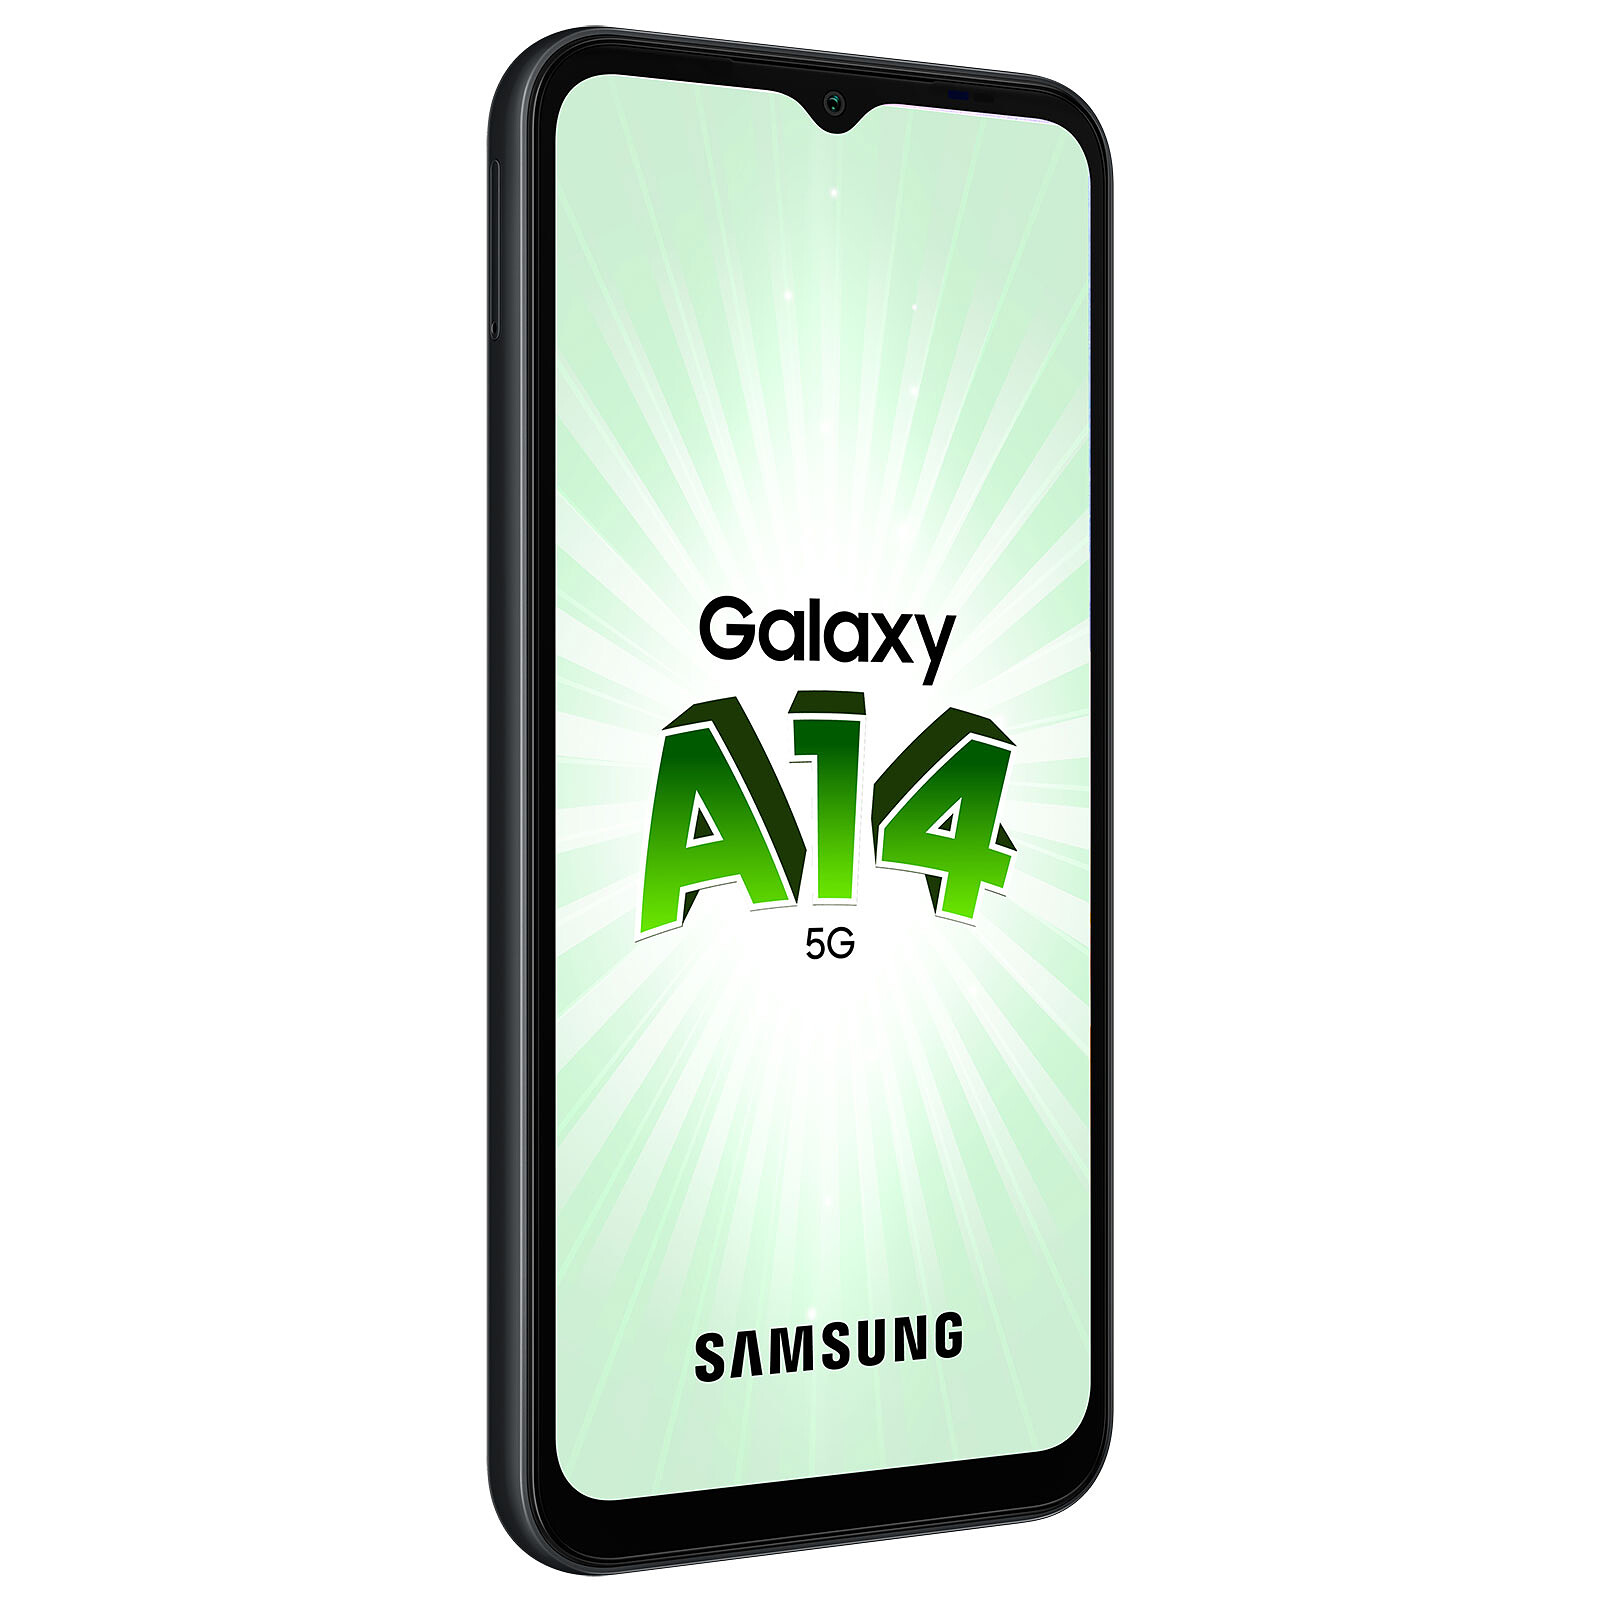 Samsung Galaxy A14 5G Black (4GB / 128GB)